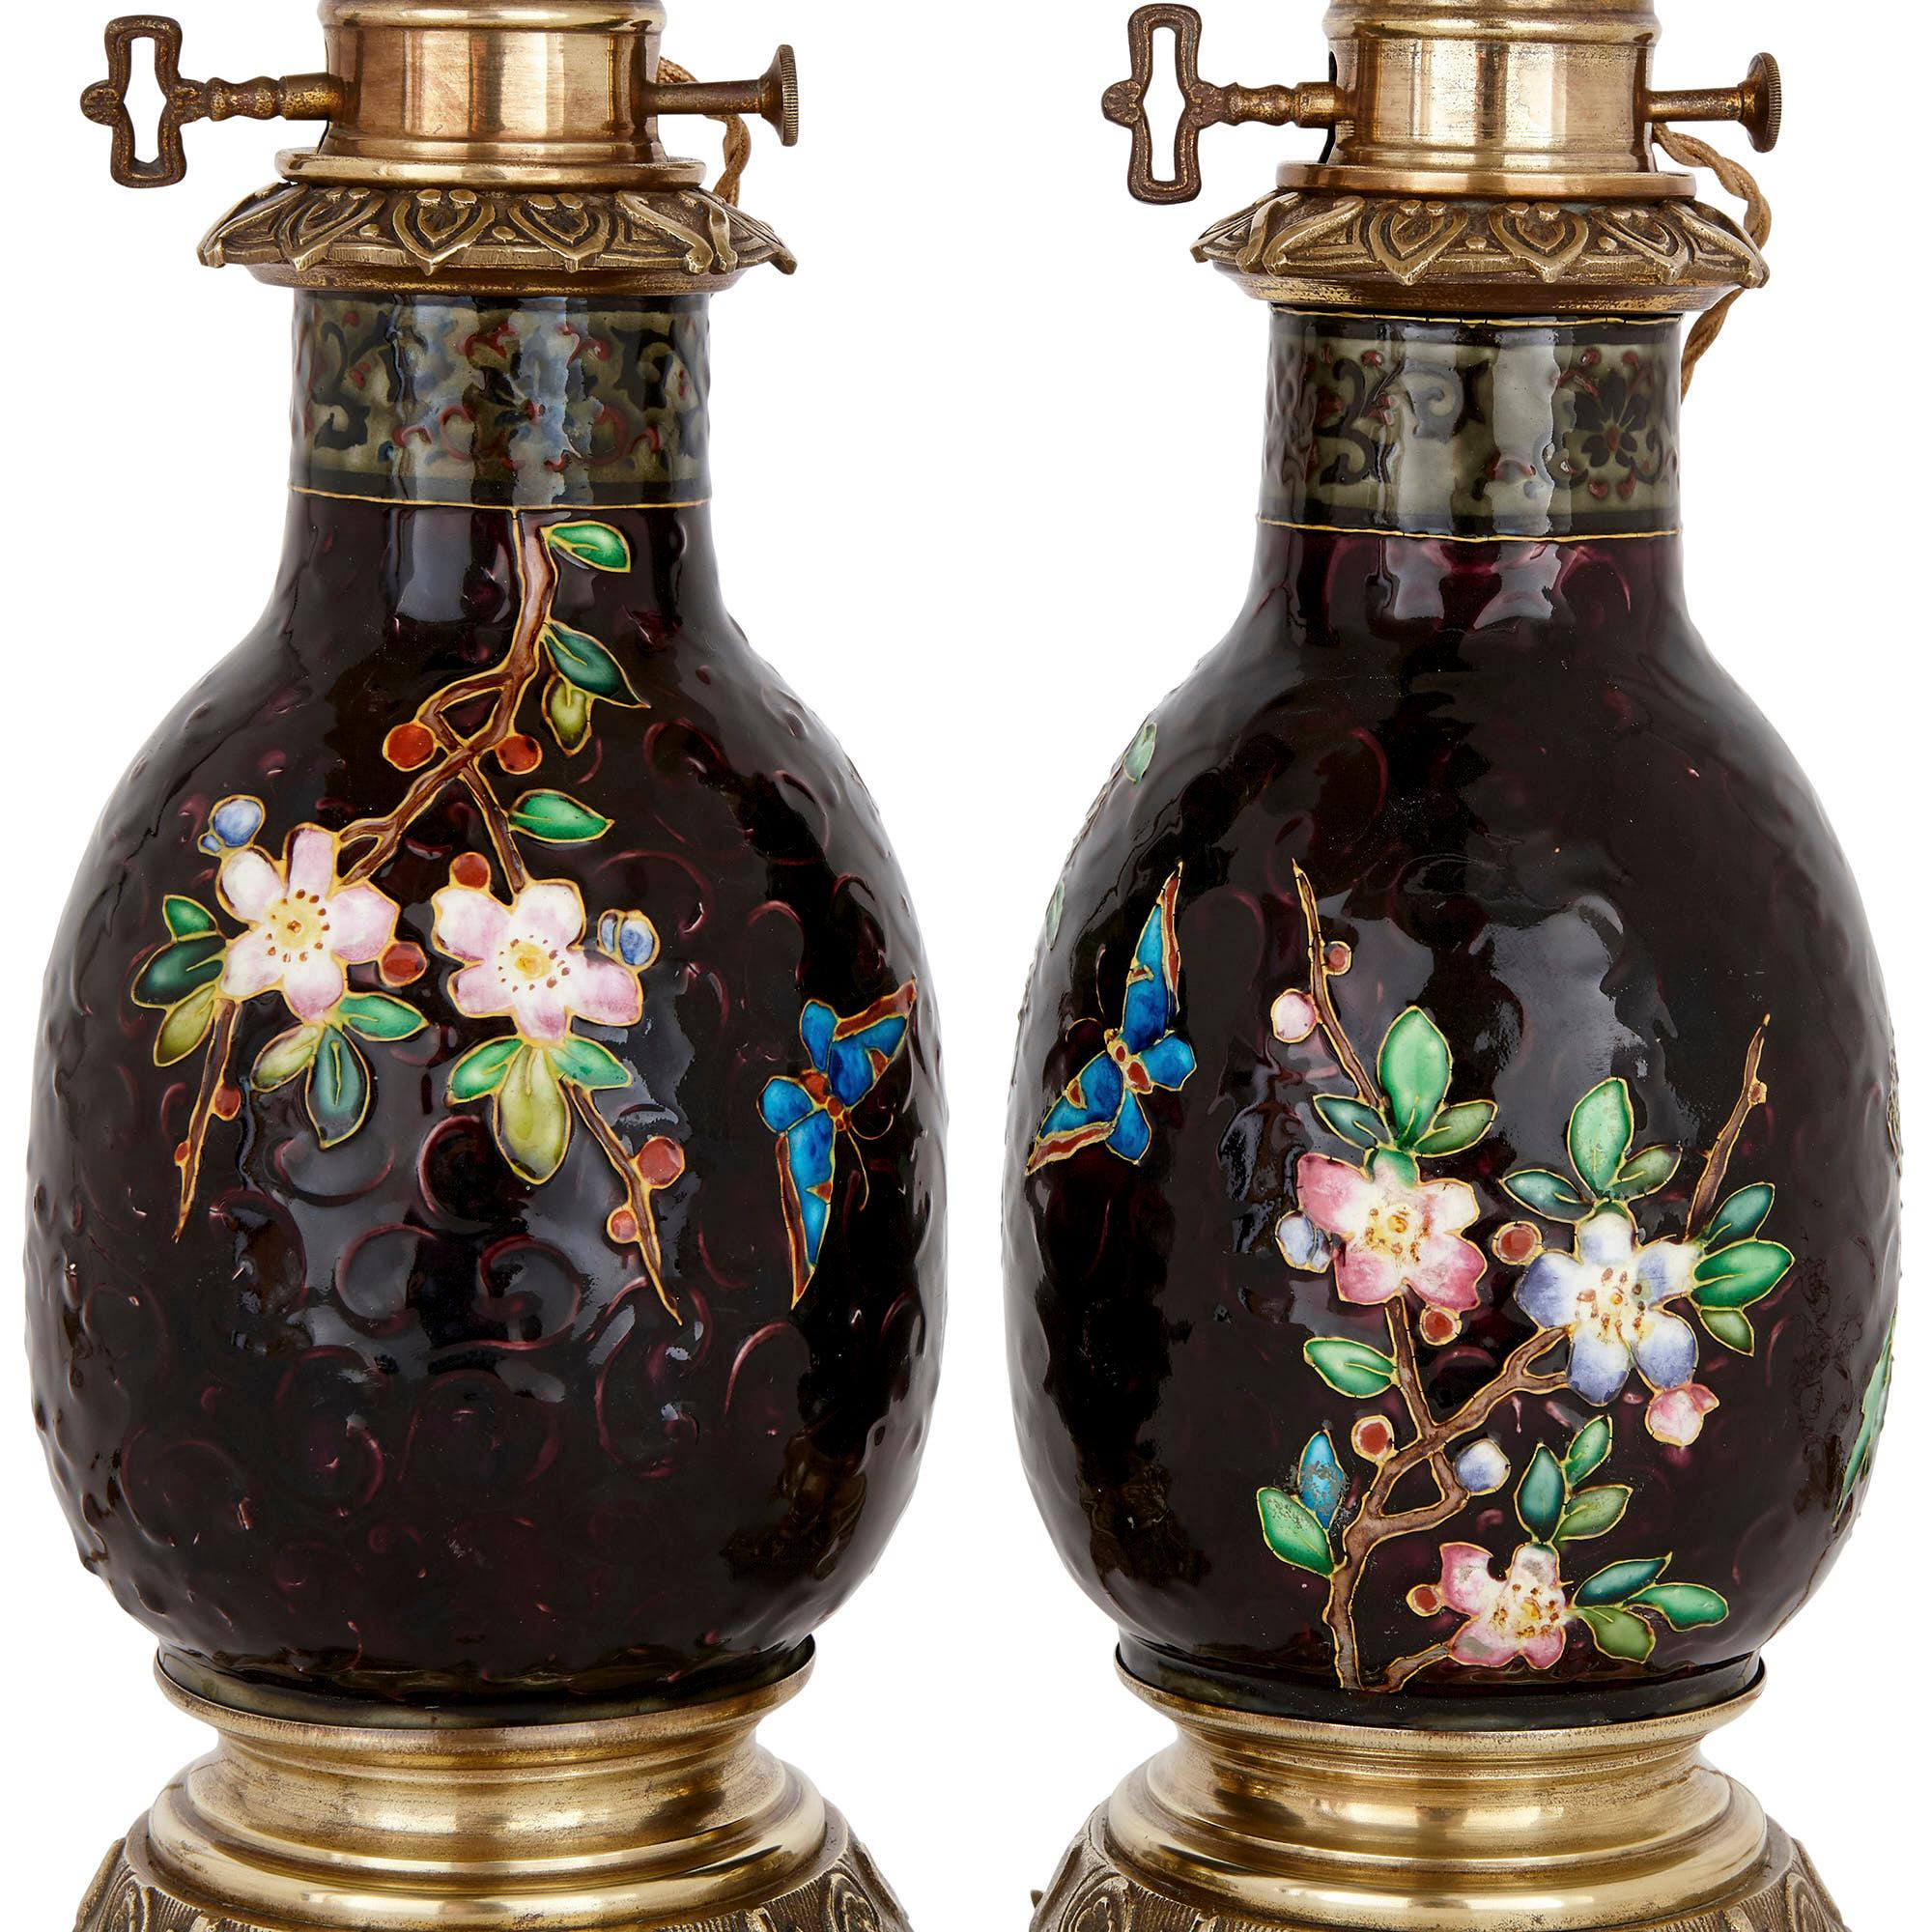 Ces merveilleuses lampes à huile ont été attribuées à la prestigieuse société de céramique Viellard & Cie. La société a été créée en 1845 à Bordeaux, en France. Il a été réalisé par Jules Vielliard en association avec ses deux fils, Albert et